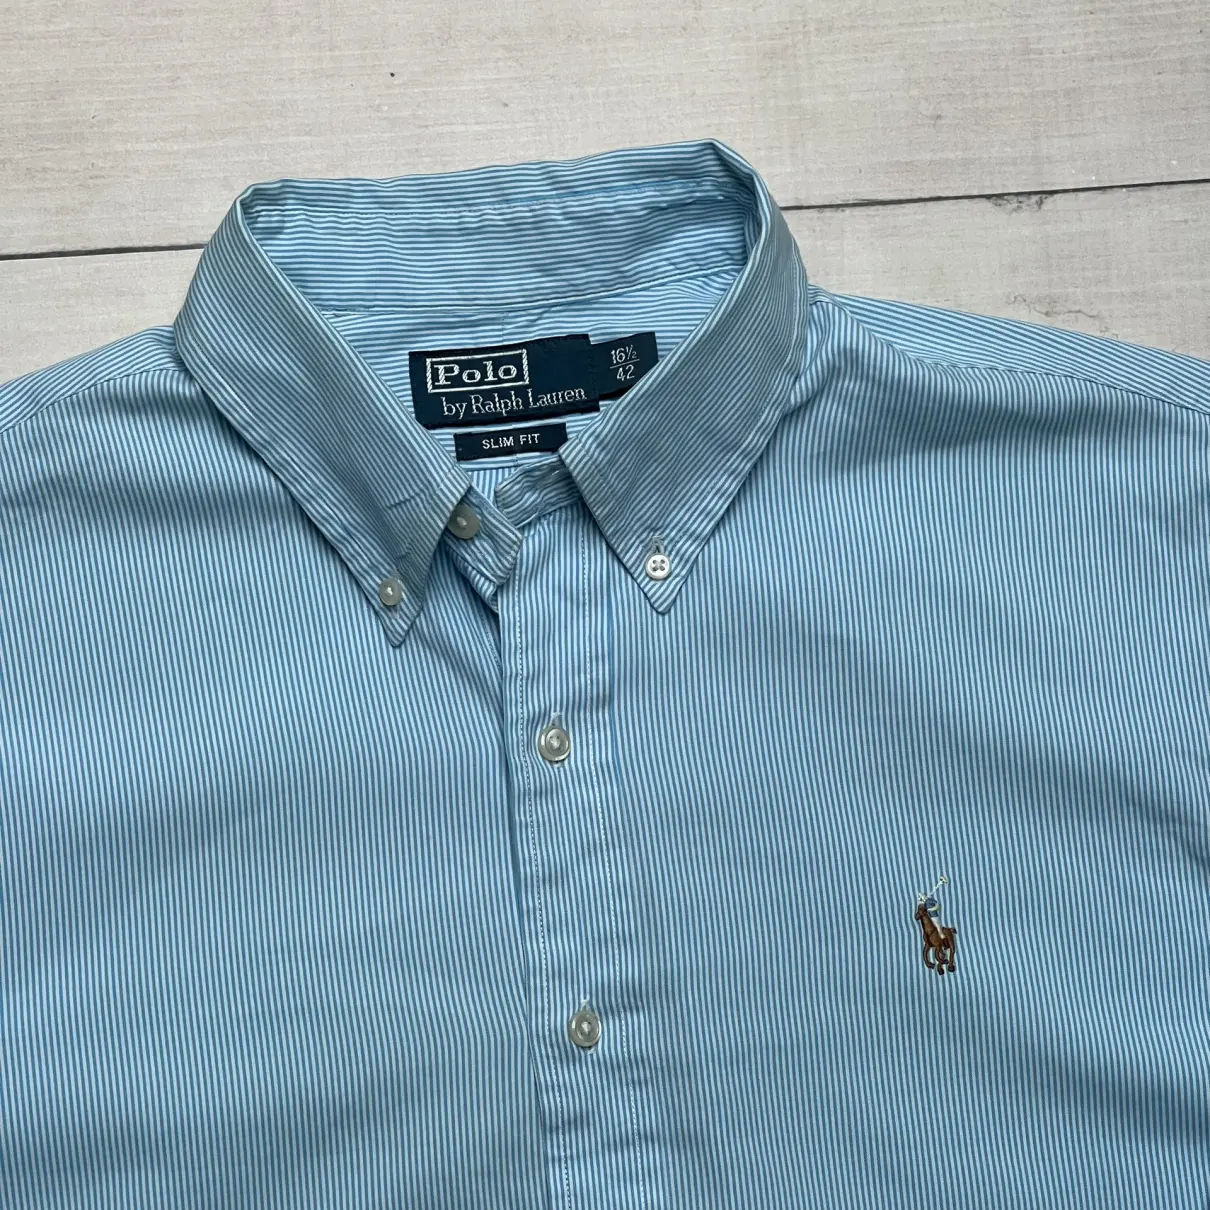 Buy Polo Ralph Lauren Shirt online